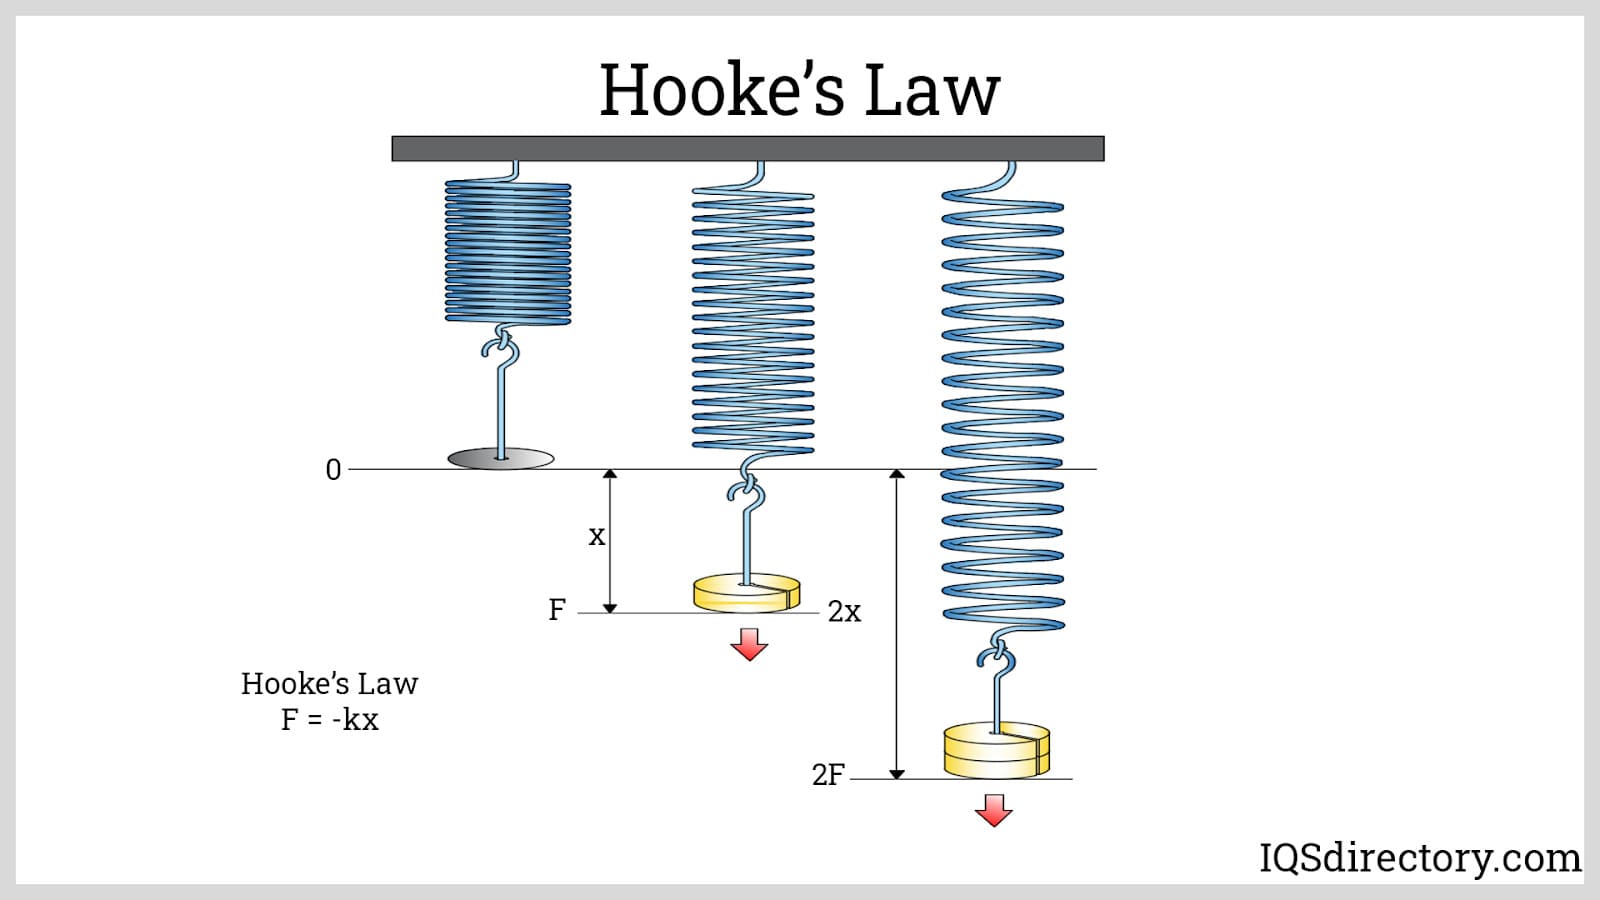 Hooke‘s Law